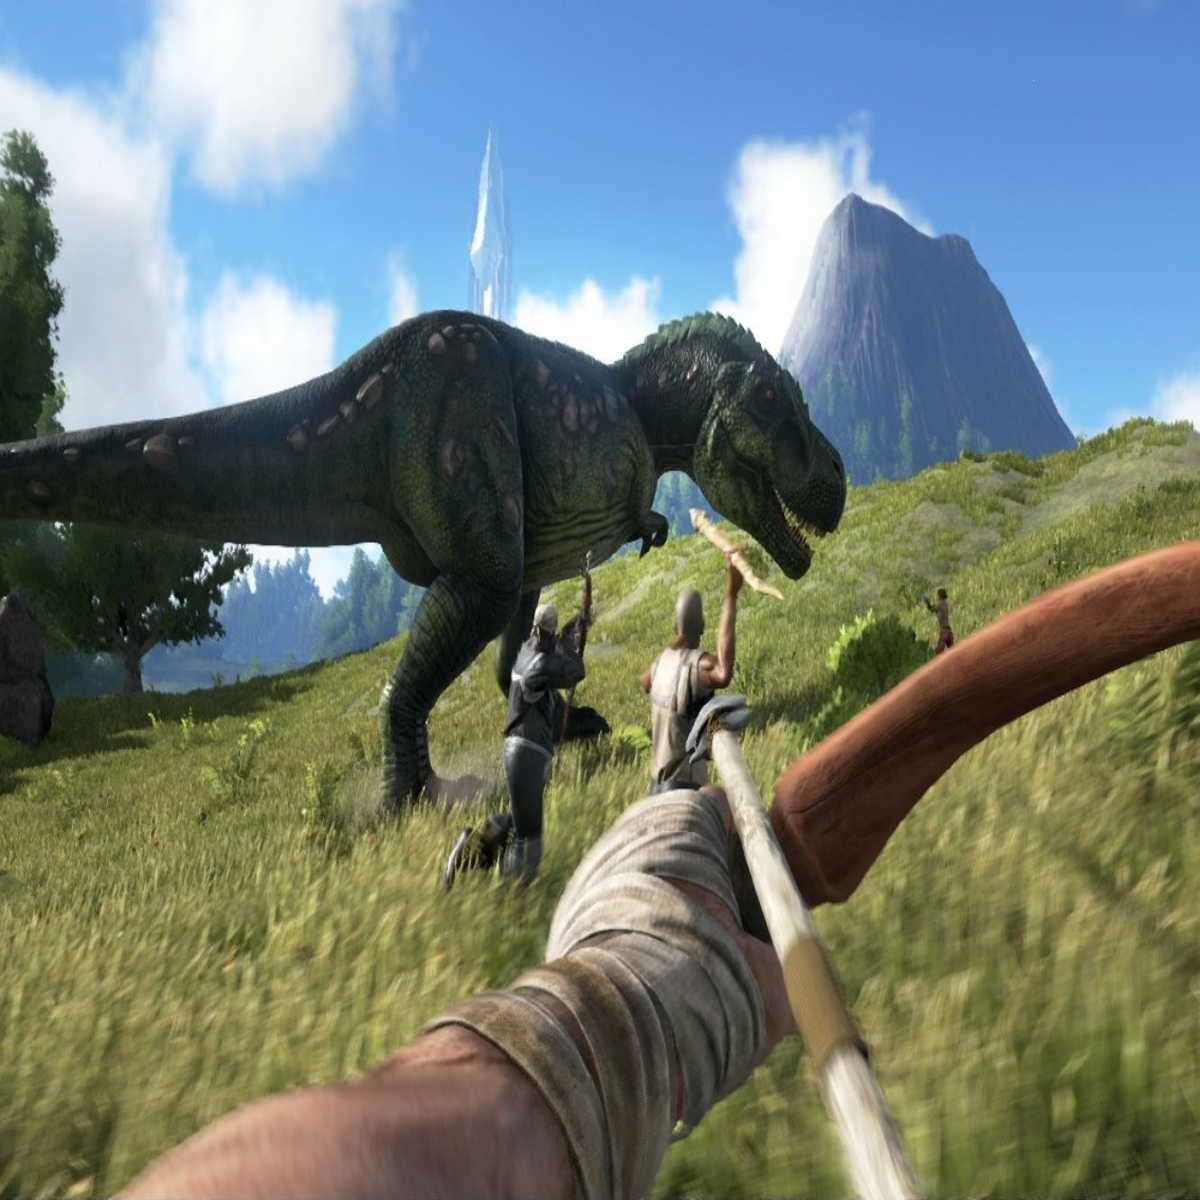 Um personagem do jogo o jogo é um dinossauro.